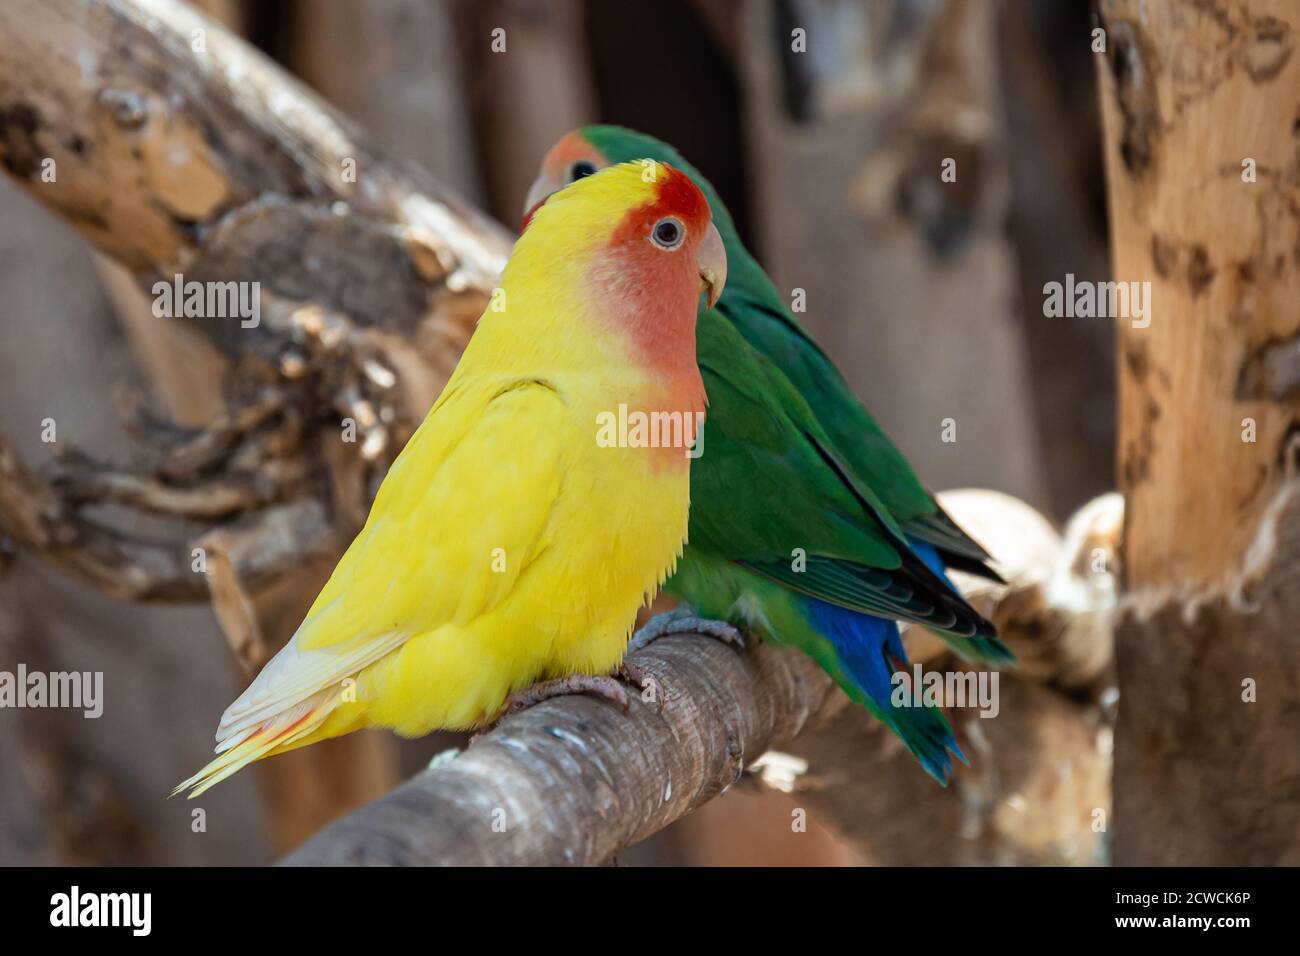 Zwei Papageien mit grünen und gelben Farben sitzen auf einem Ast. Verschwommener Hintergrund. Stock Foto Stockfoto